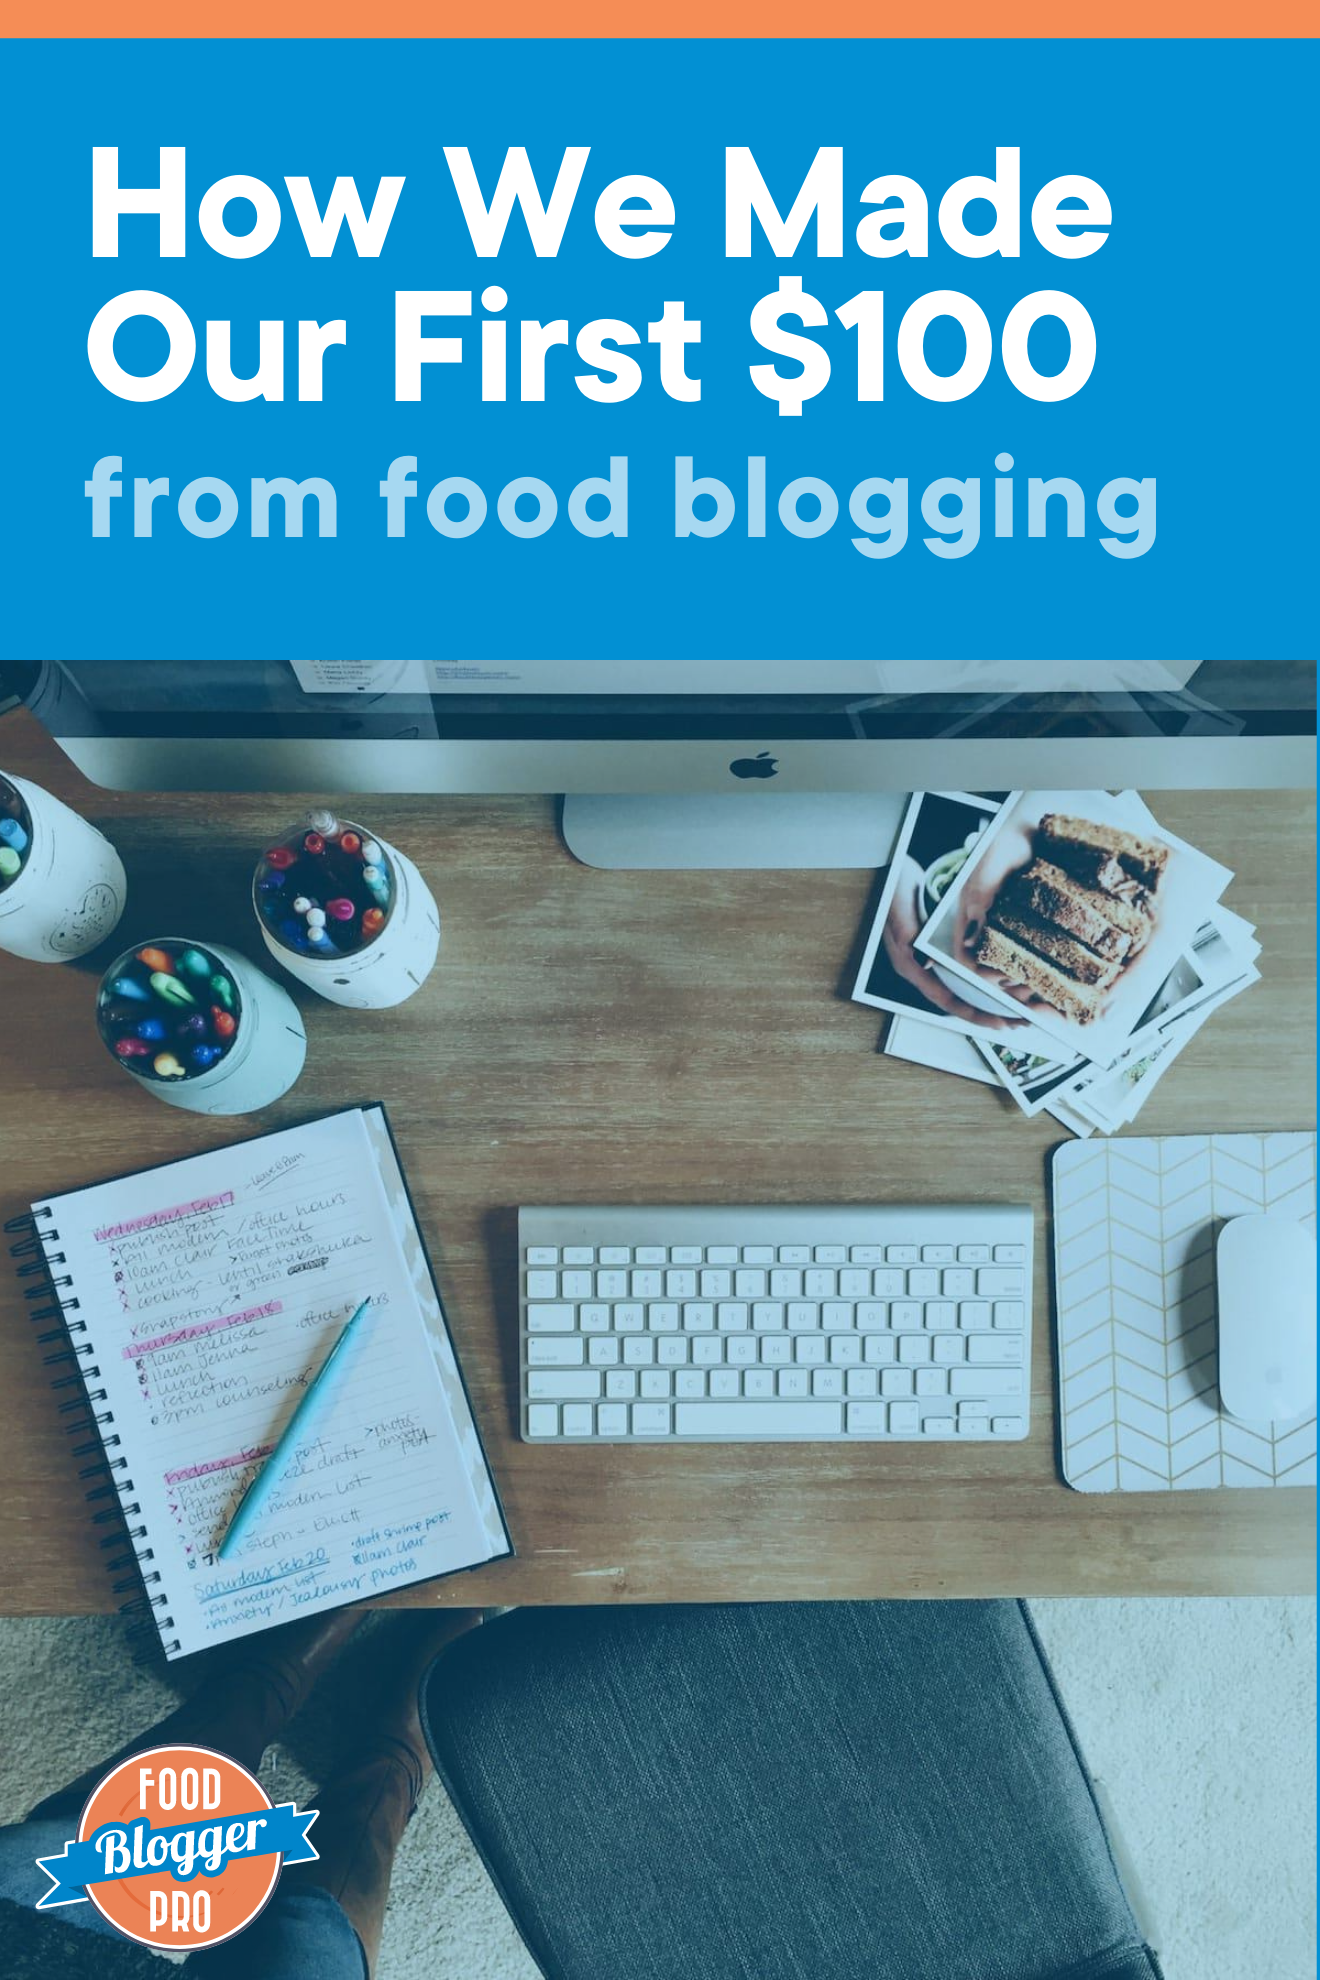 一张带计算机、键盘、鼠标和笔记本的桌面照片,标题为文章“我们如何从Foodblog